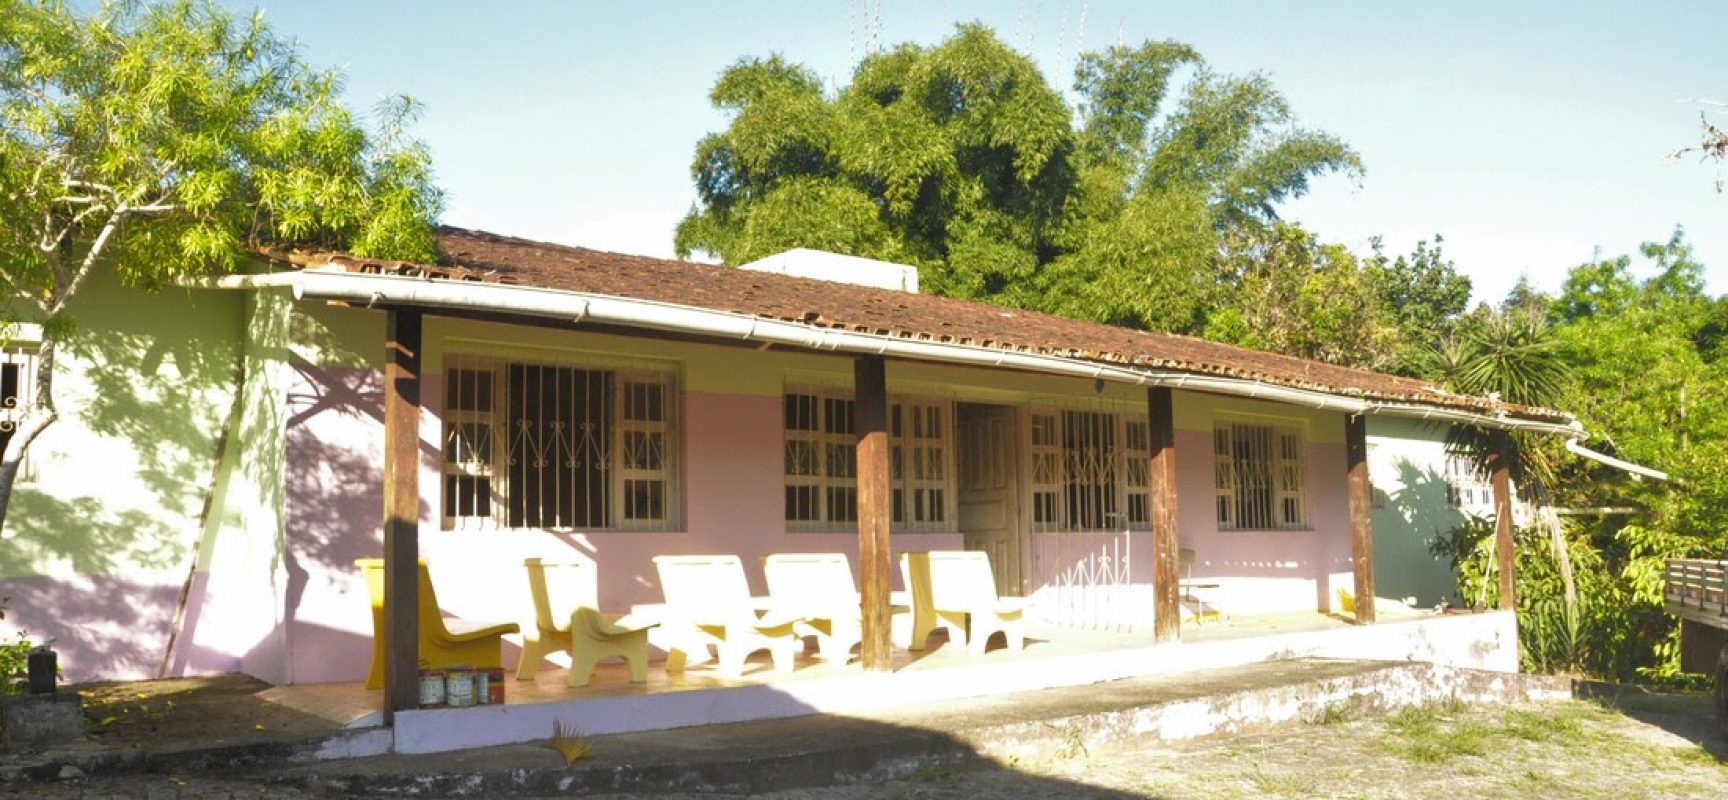 Rotary visa promover capacitação para a comunidade na Escola São João Bosco